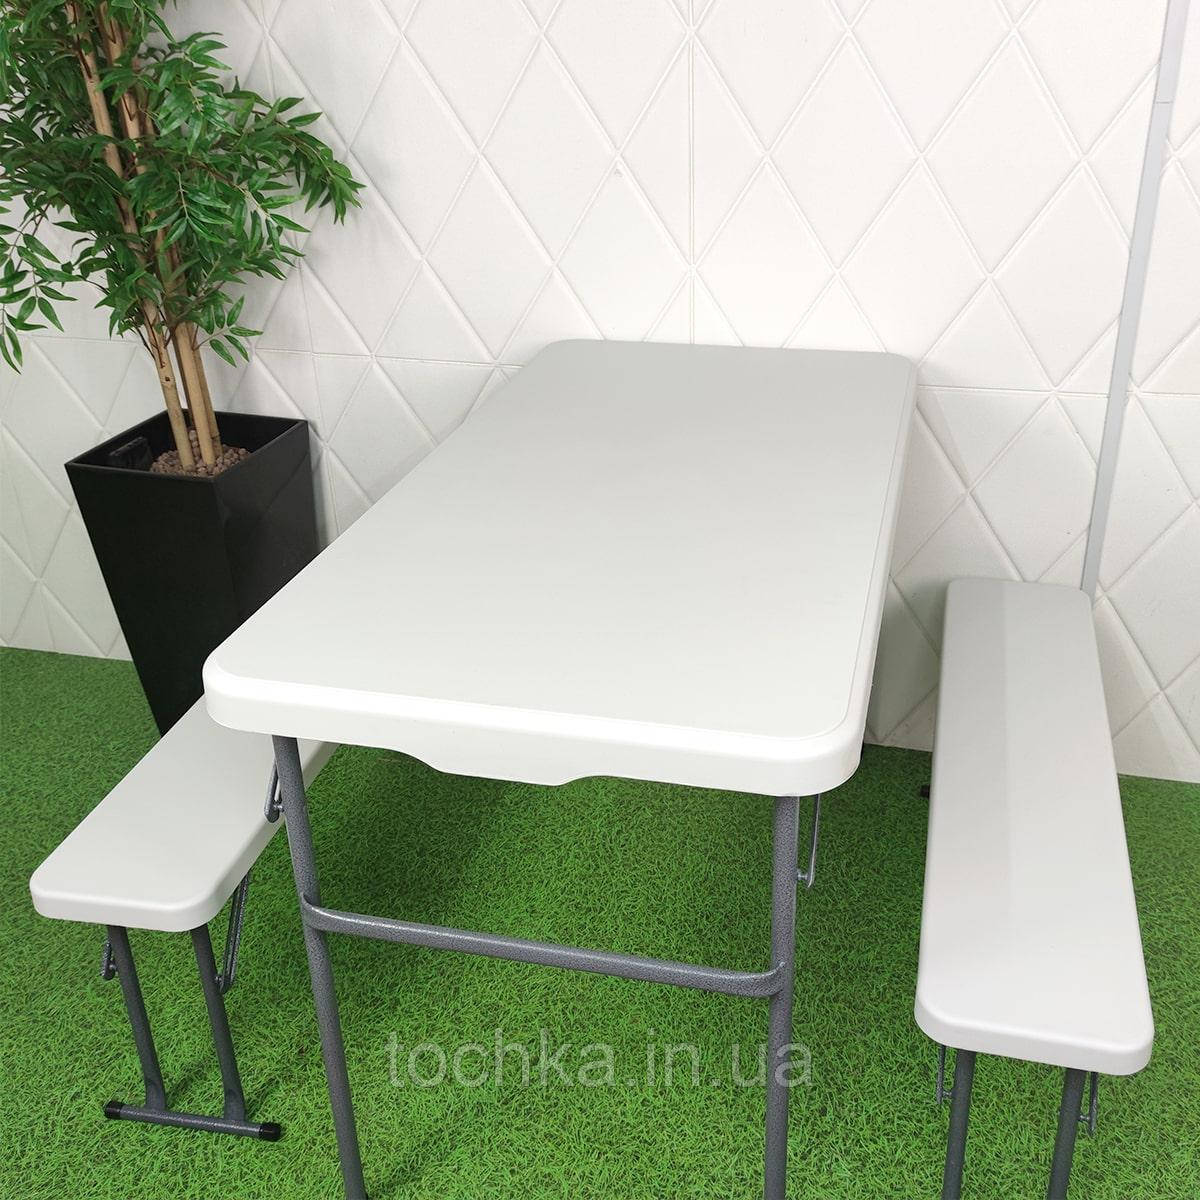 Набір садової мебелі ( стіл+2 лави) SW-00001612